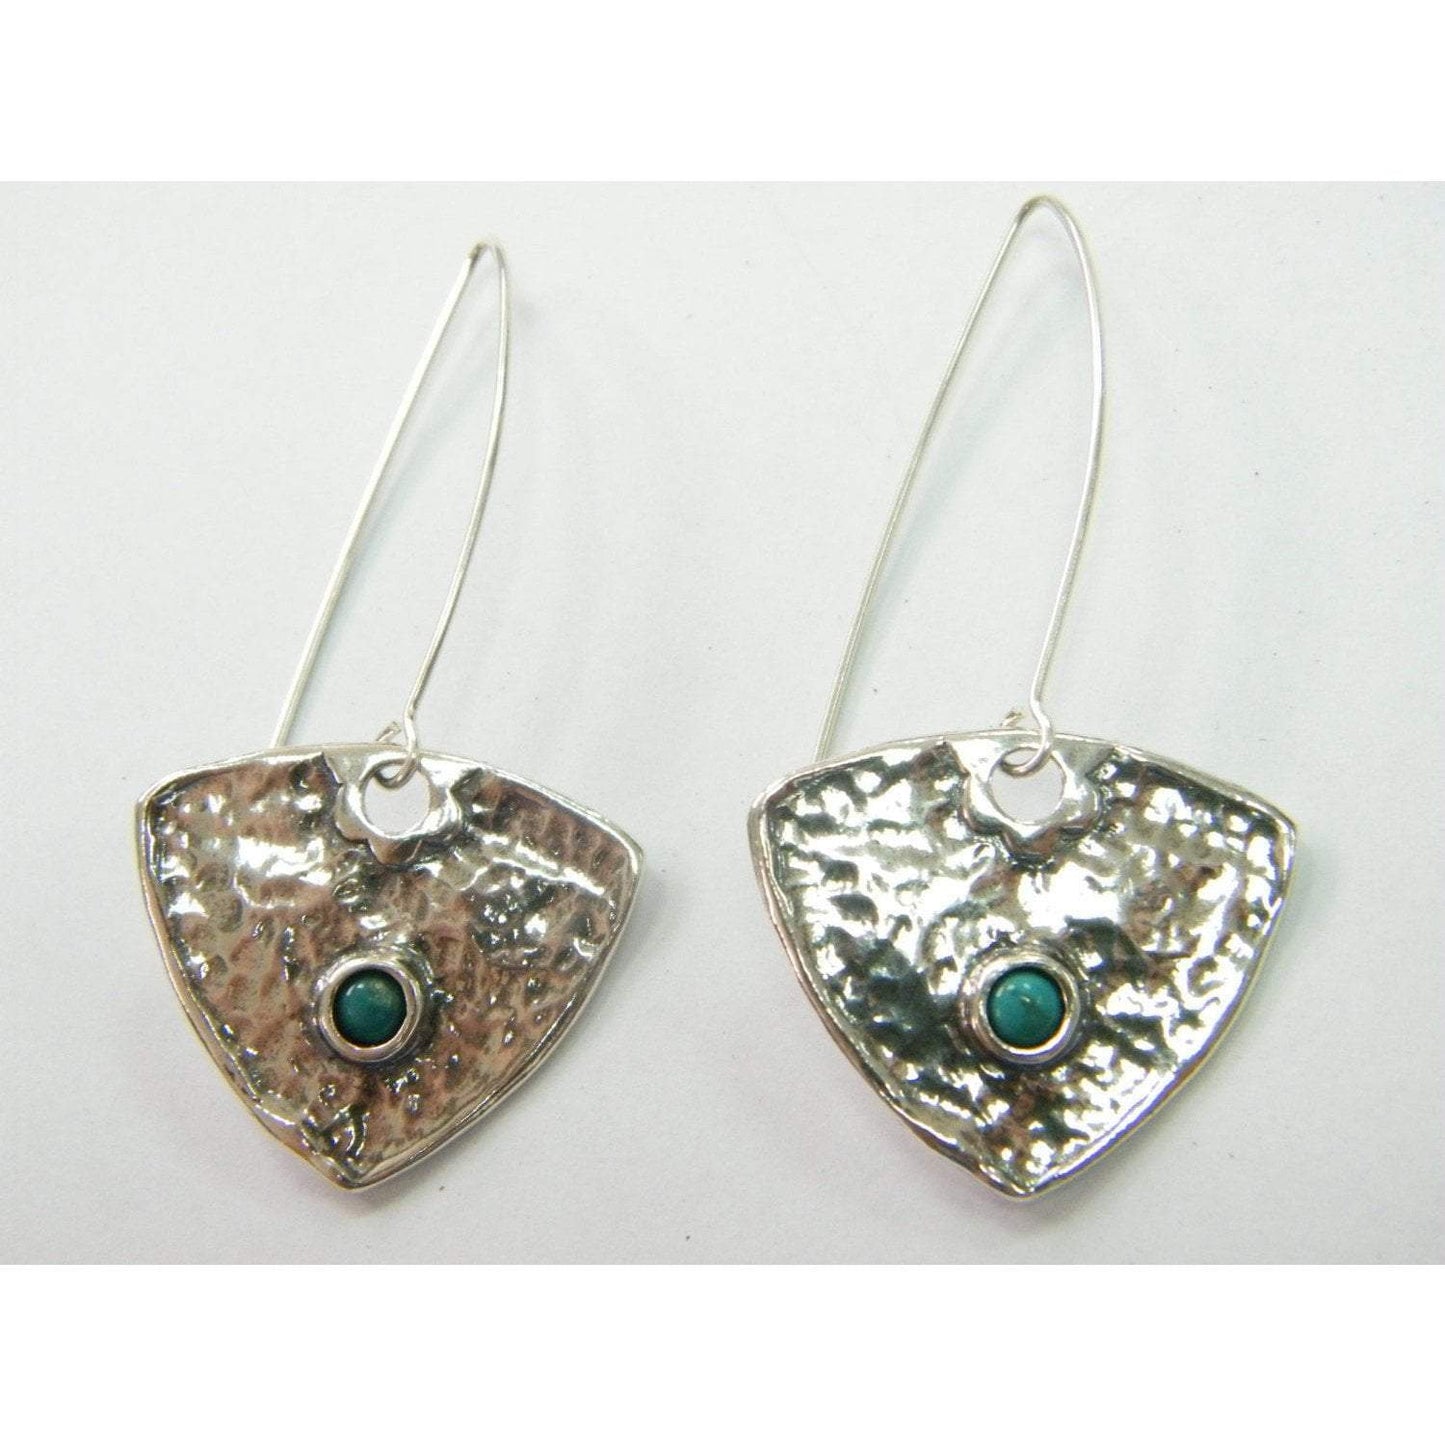 Bluenoemi Jewelry Earrings Sterling Silver Earrings for Woman dangling Turquoise Earrings, Garnets, Lapis, amethyst, opal